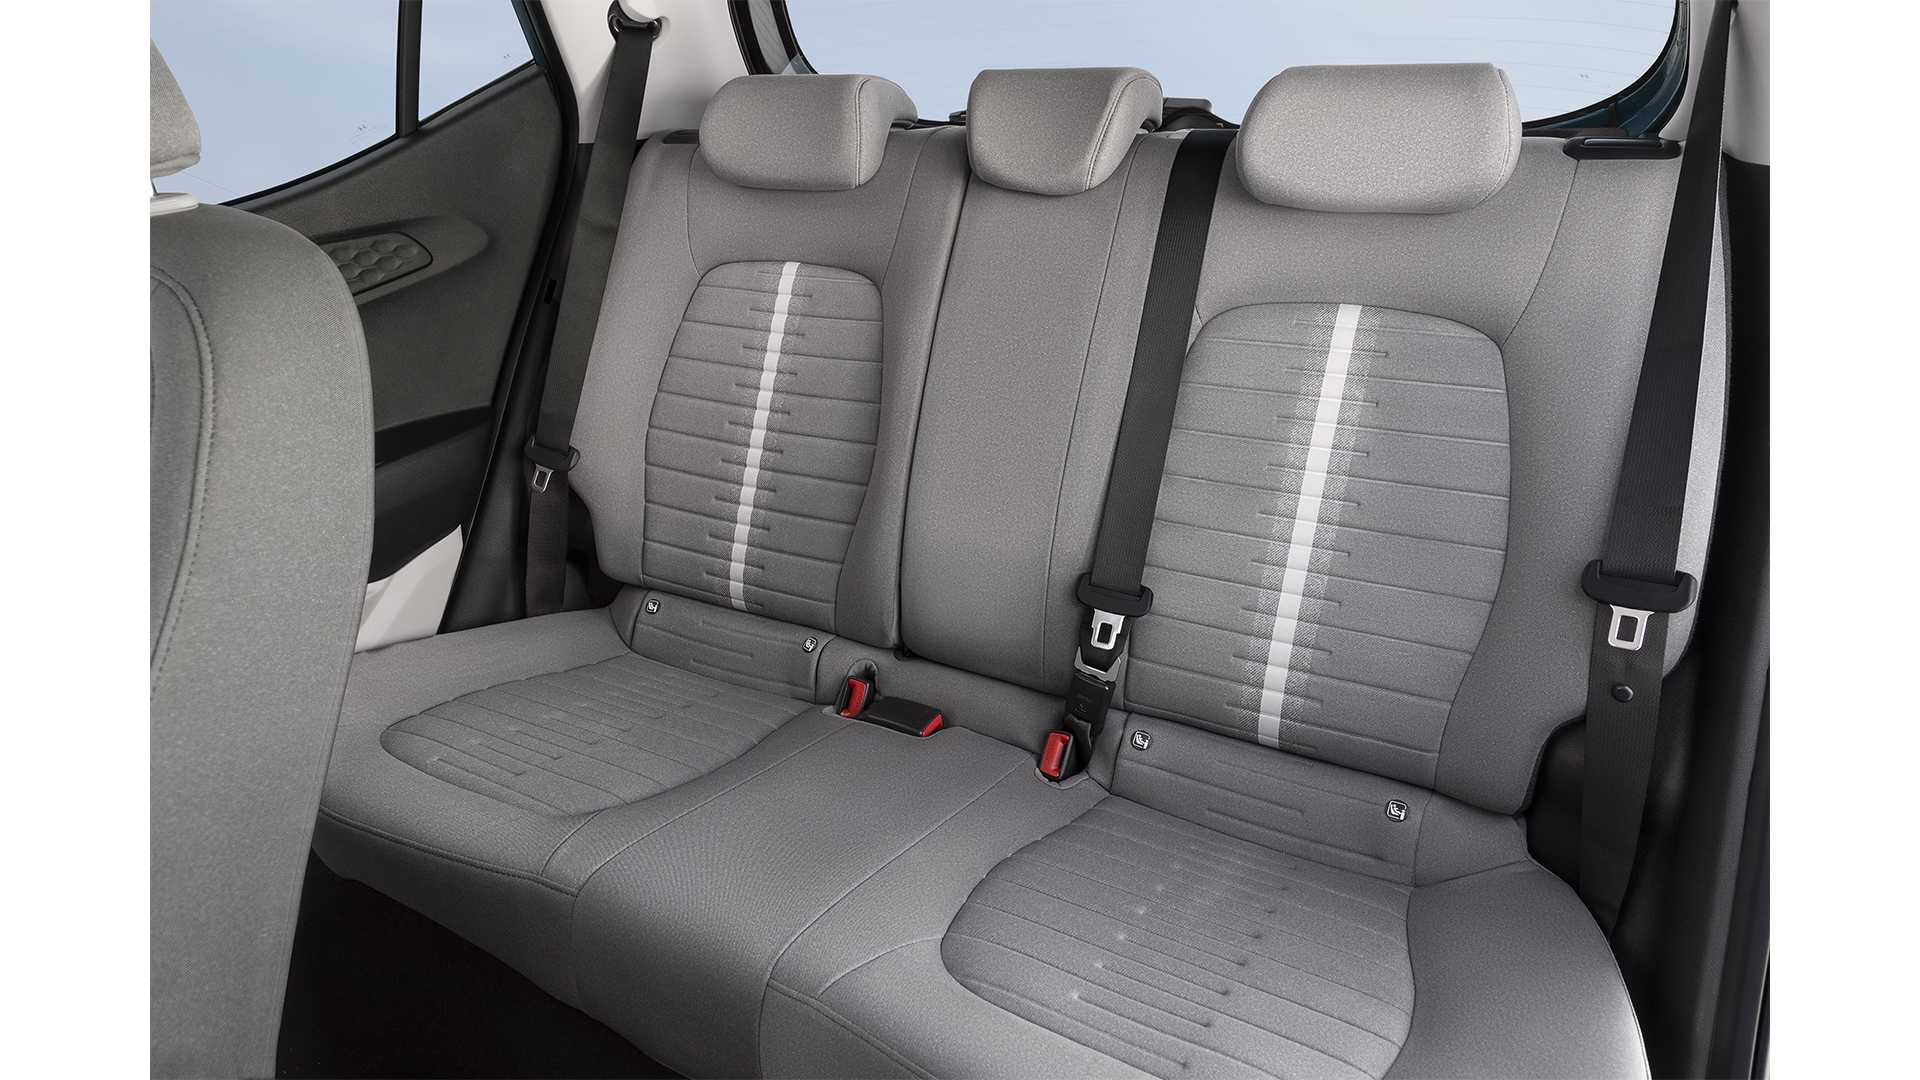 Hyundai i10 interior - Rear Seats